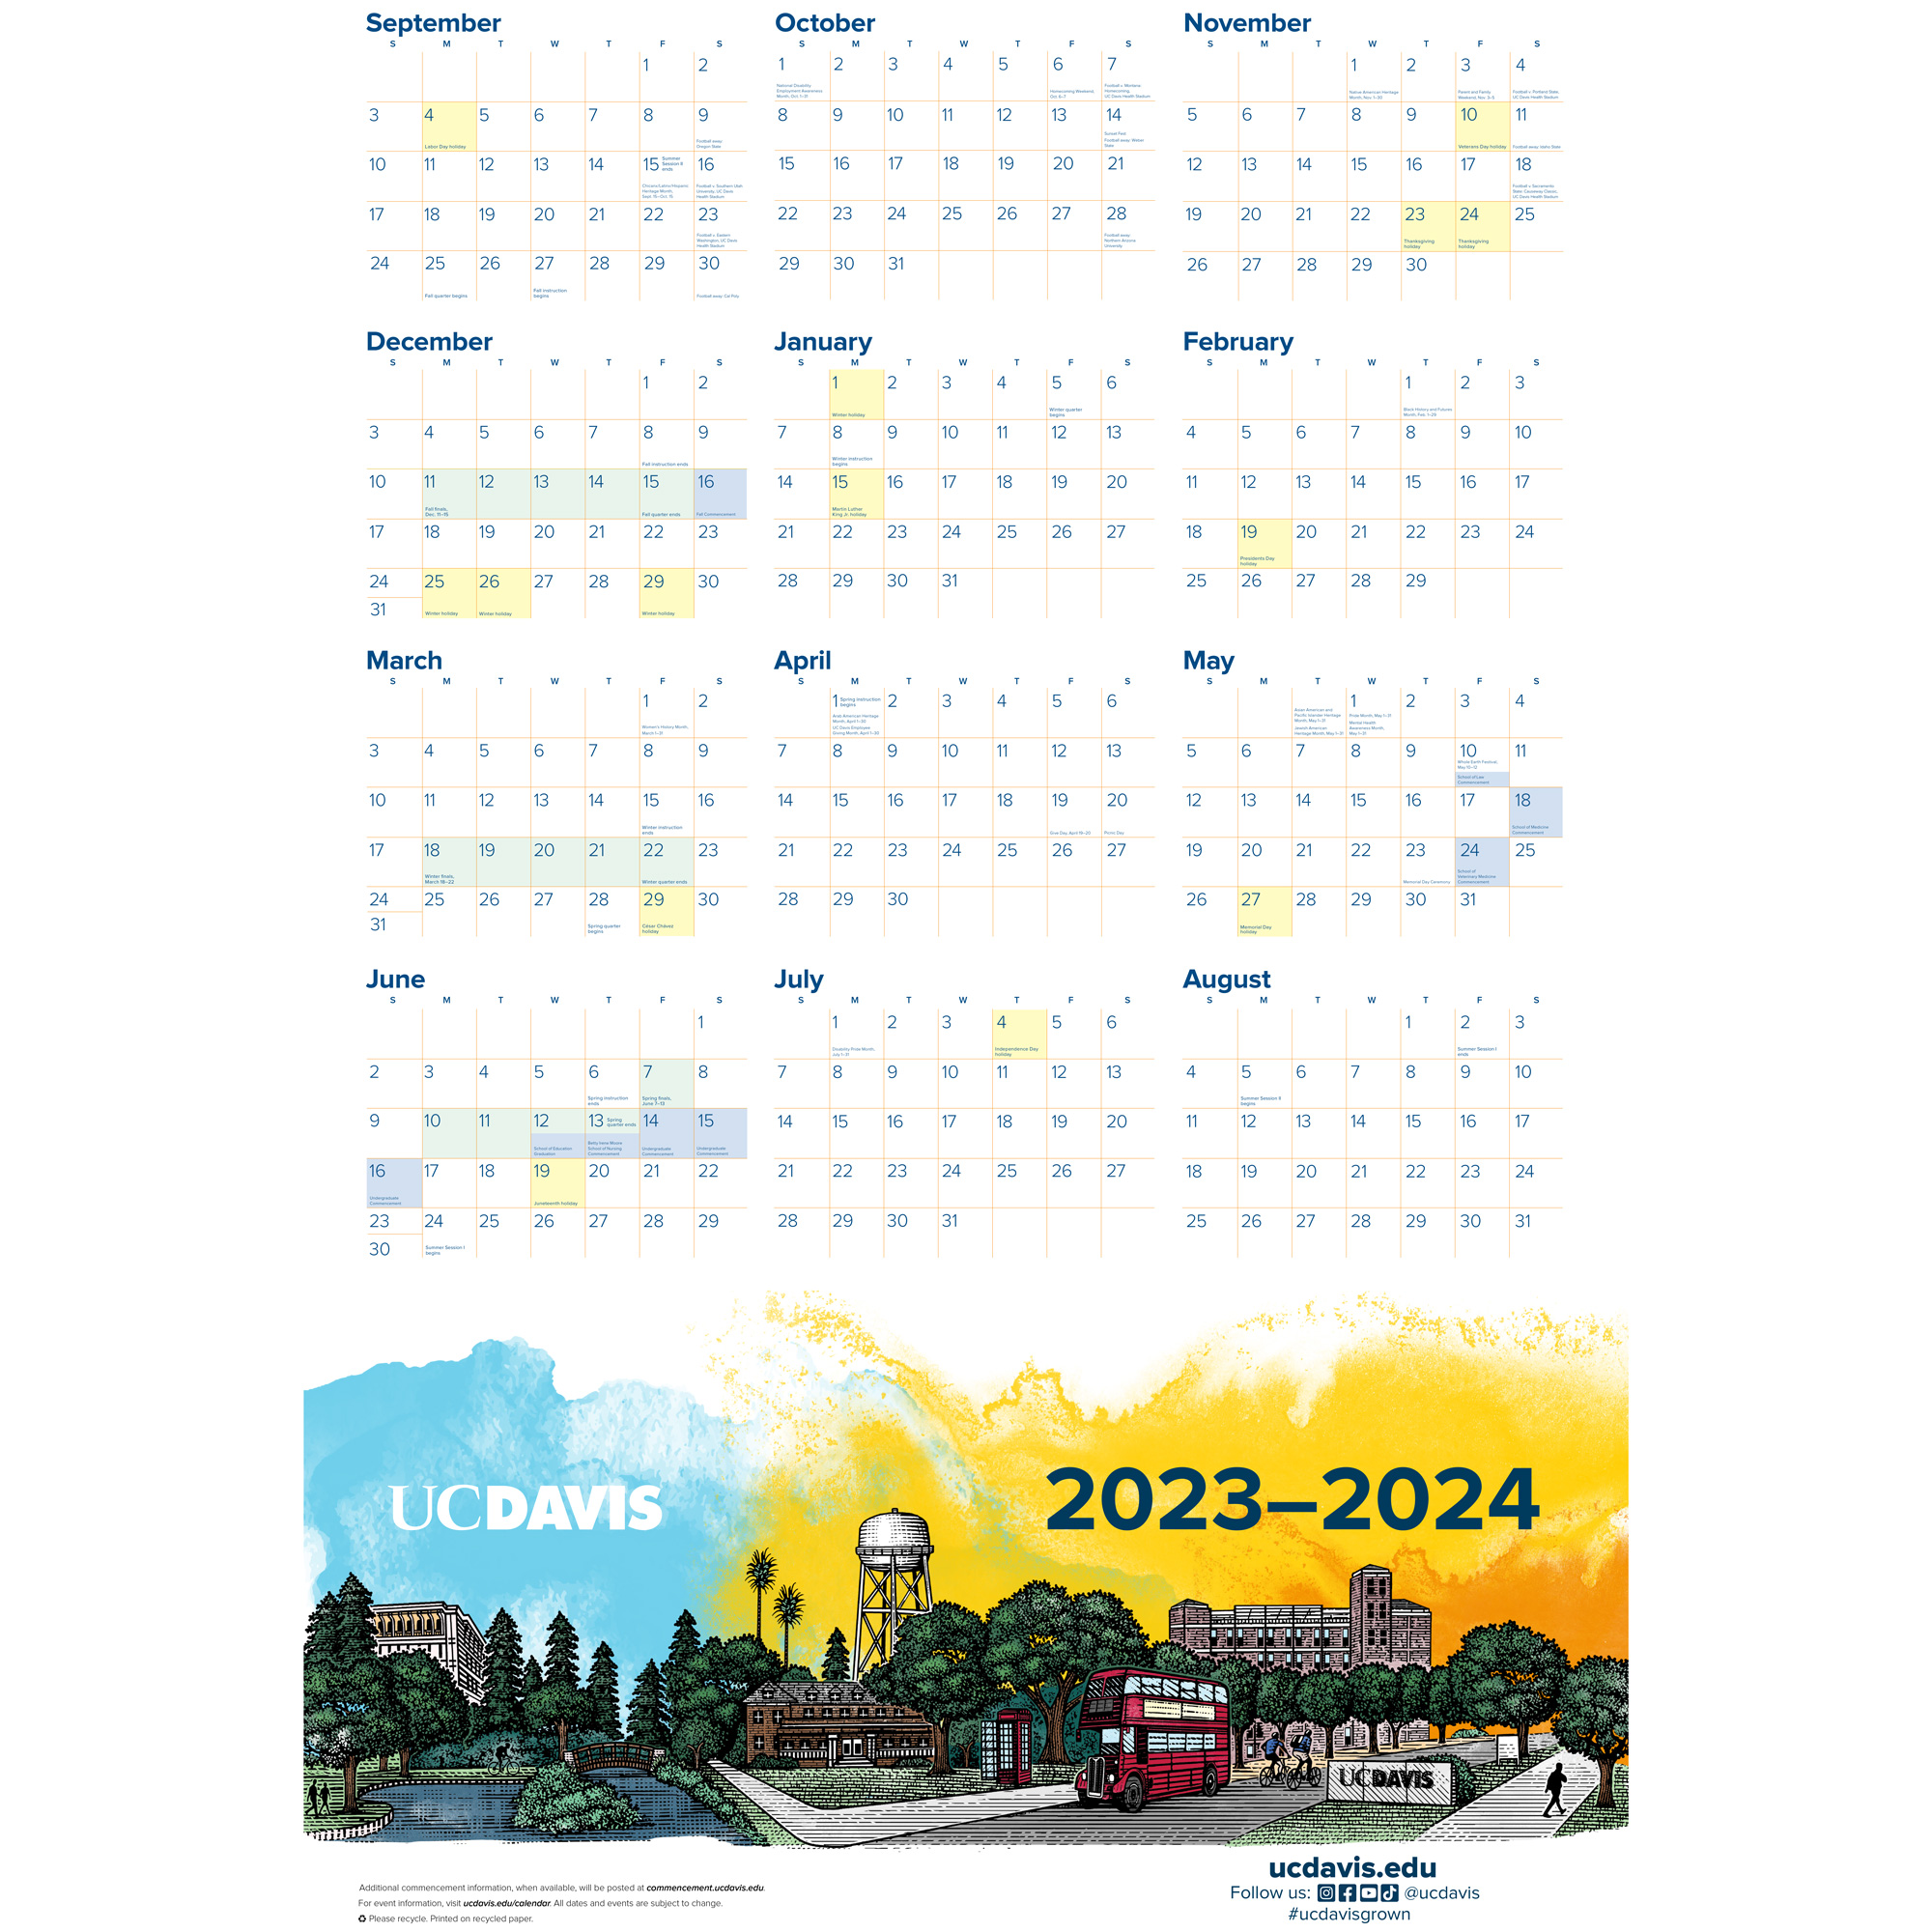 uc davis holiday schedule 2023